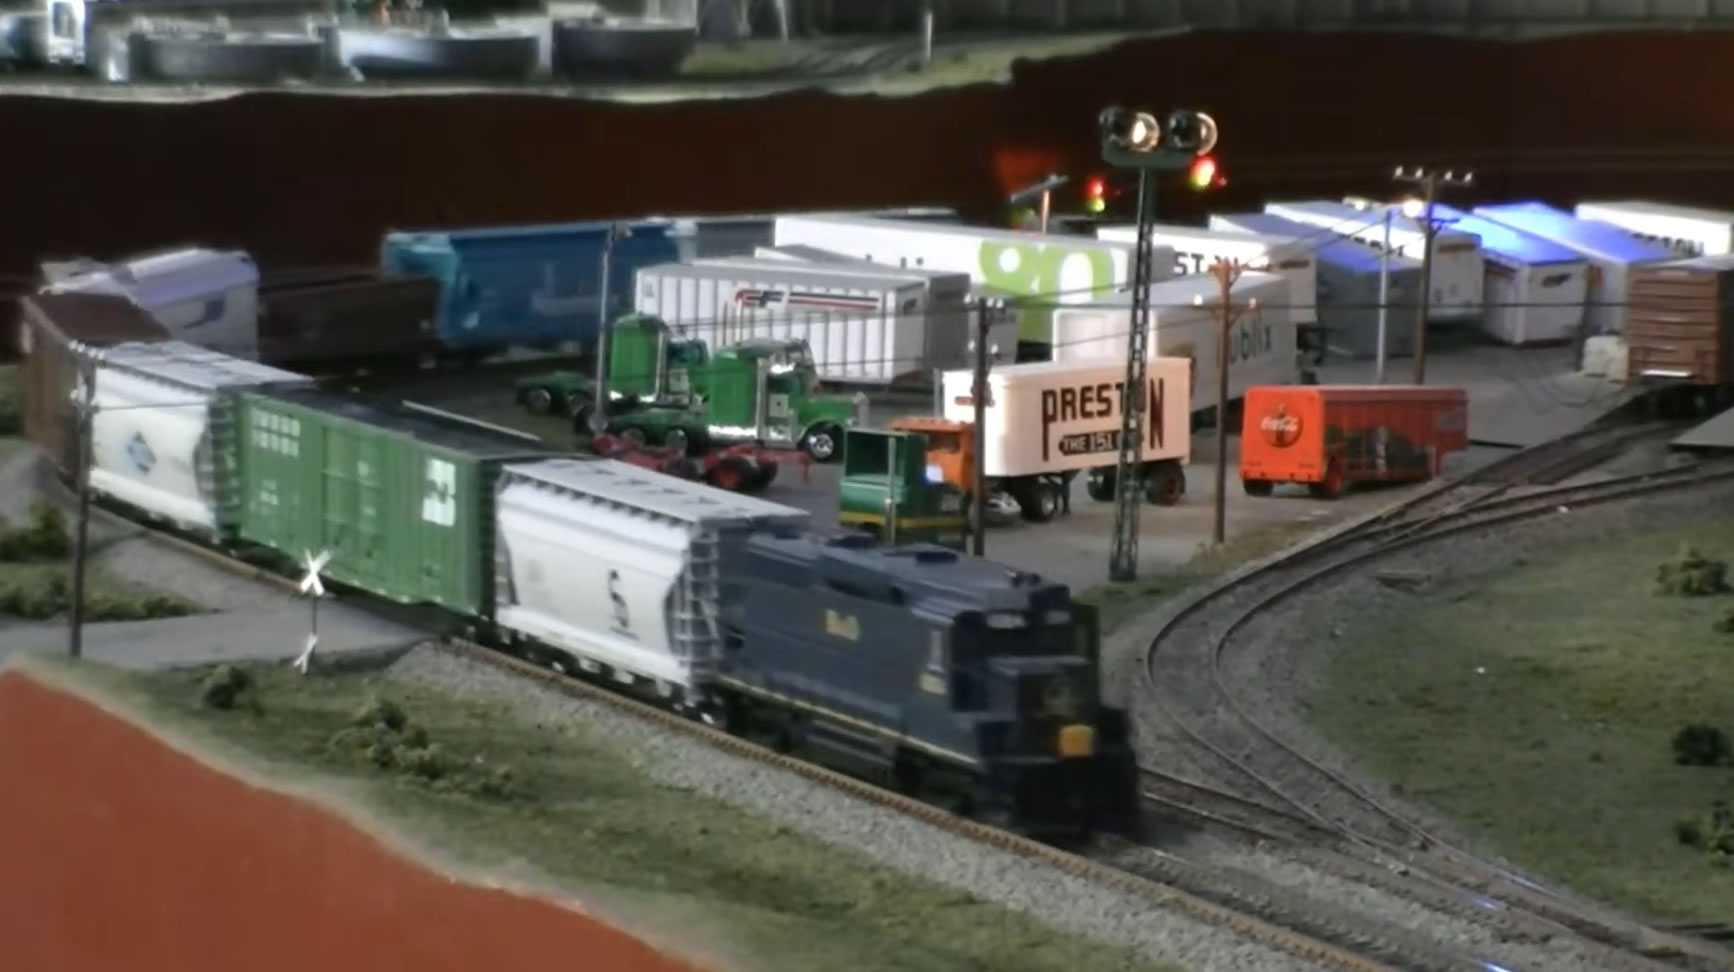 model trains